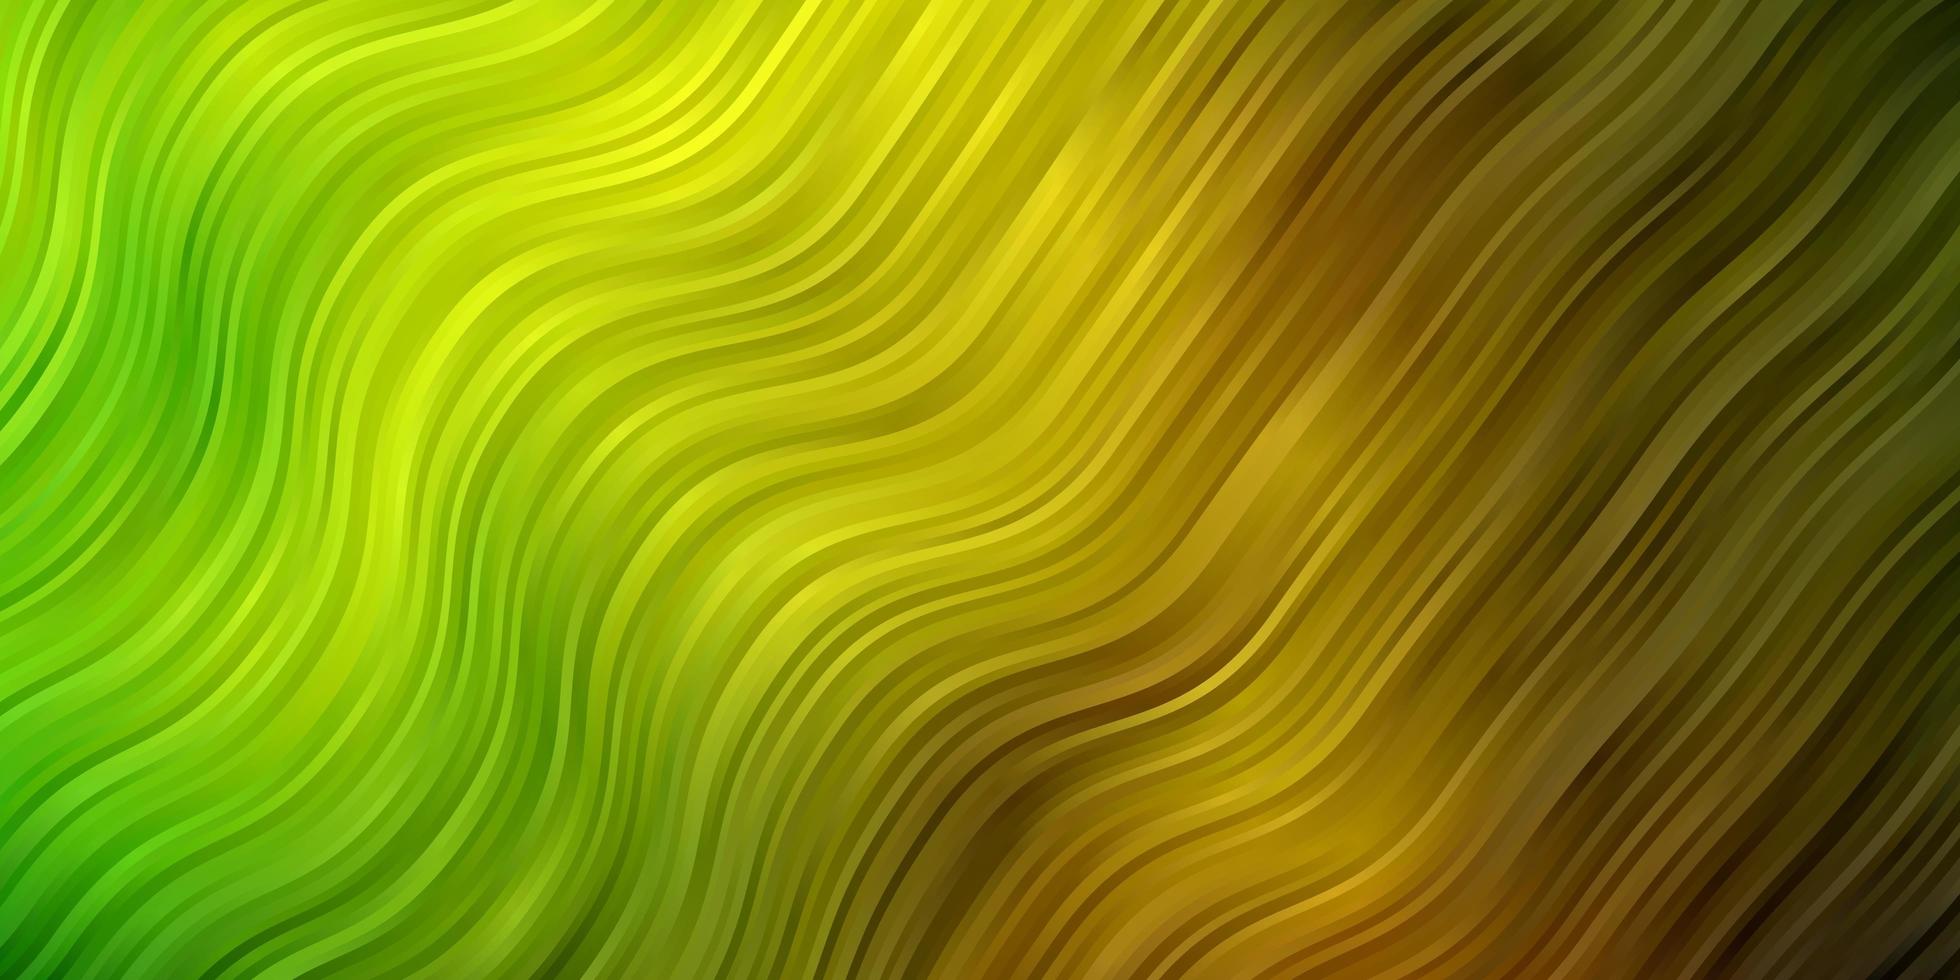 modelo de vetor verde escuro e amarelo com curvas. ilustração em estilo de meio-tom com curvas de gradiente. padrão para sites, páginas de destino.